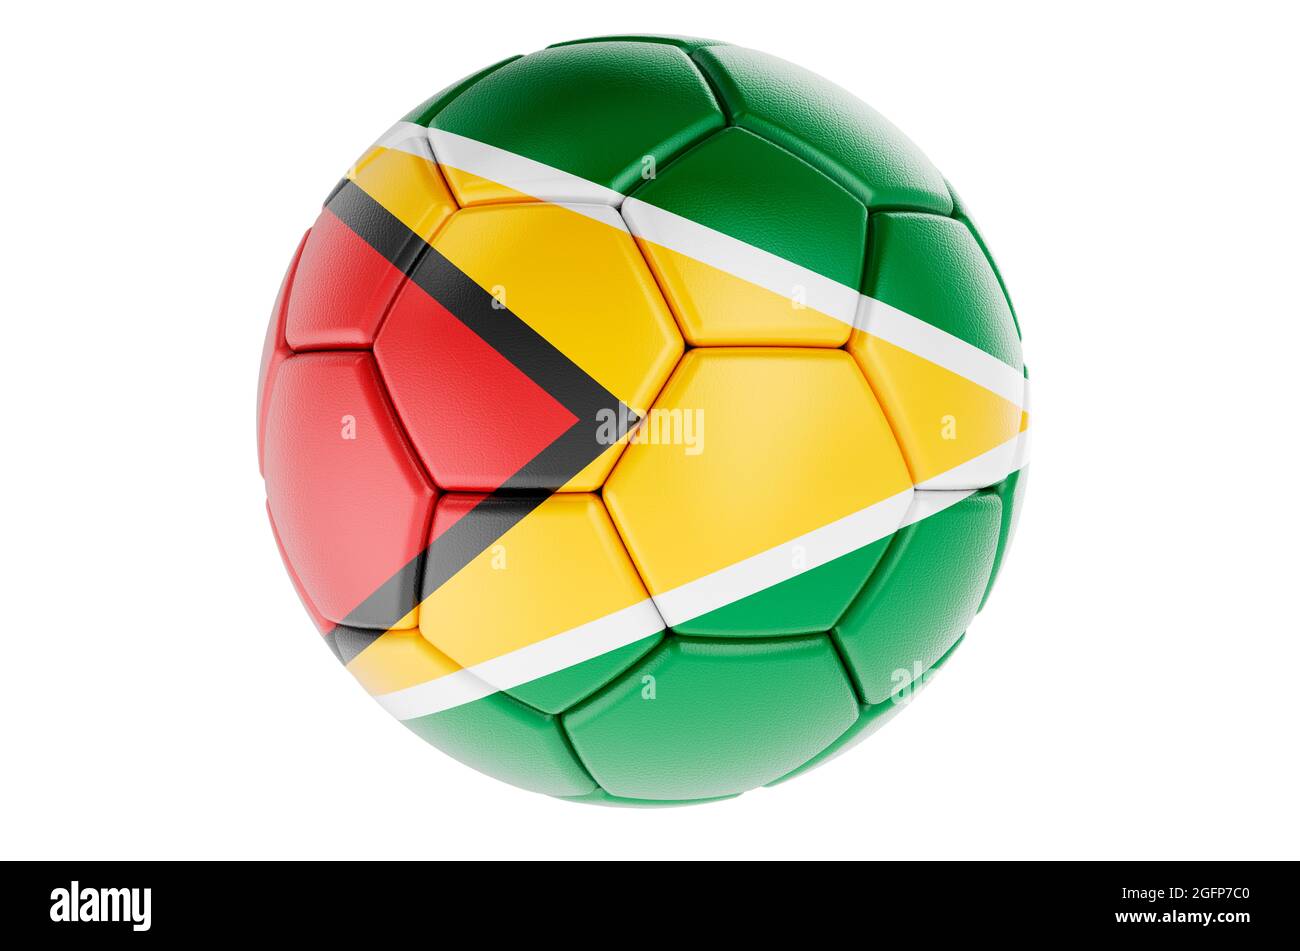 Fußball oder Fußball mit guyanischer Flagge, 3D-Darstellung isoliert auf weißem Hintergrund Stockfoto